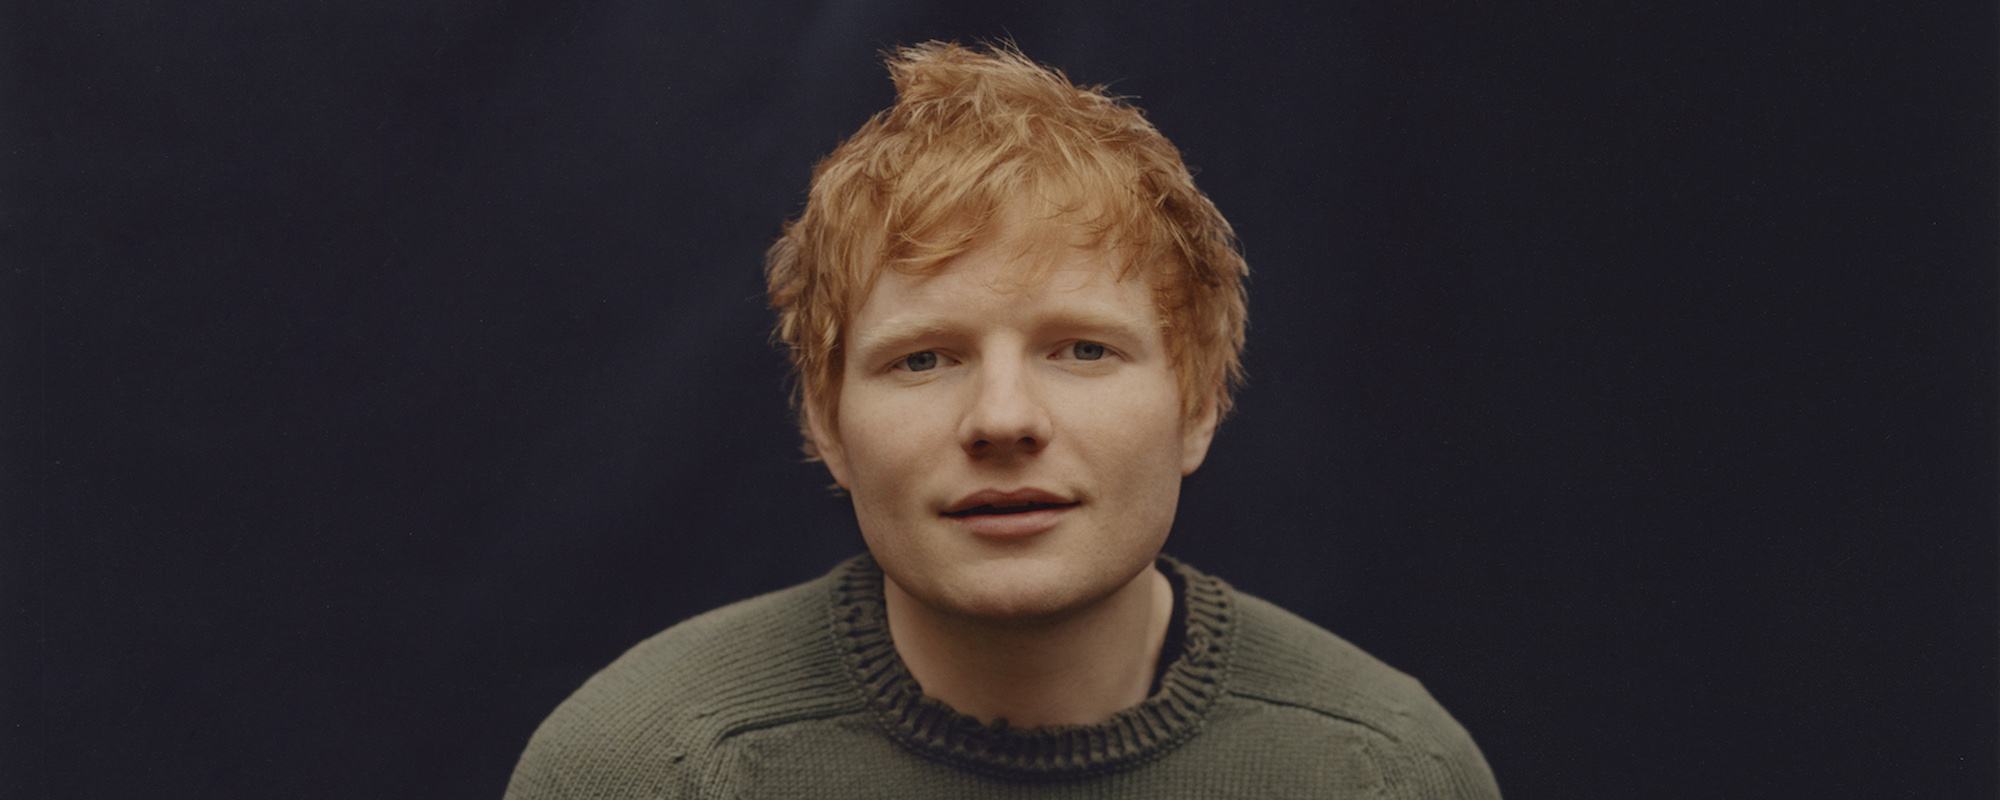 Ed Sheeran révèle comment il a réagi au diagnostic de cancer de sa femme